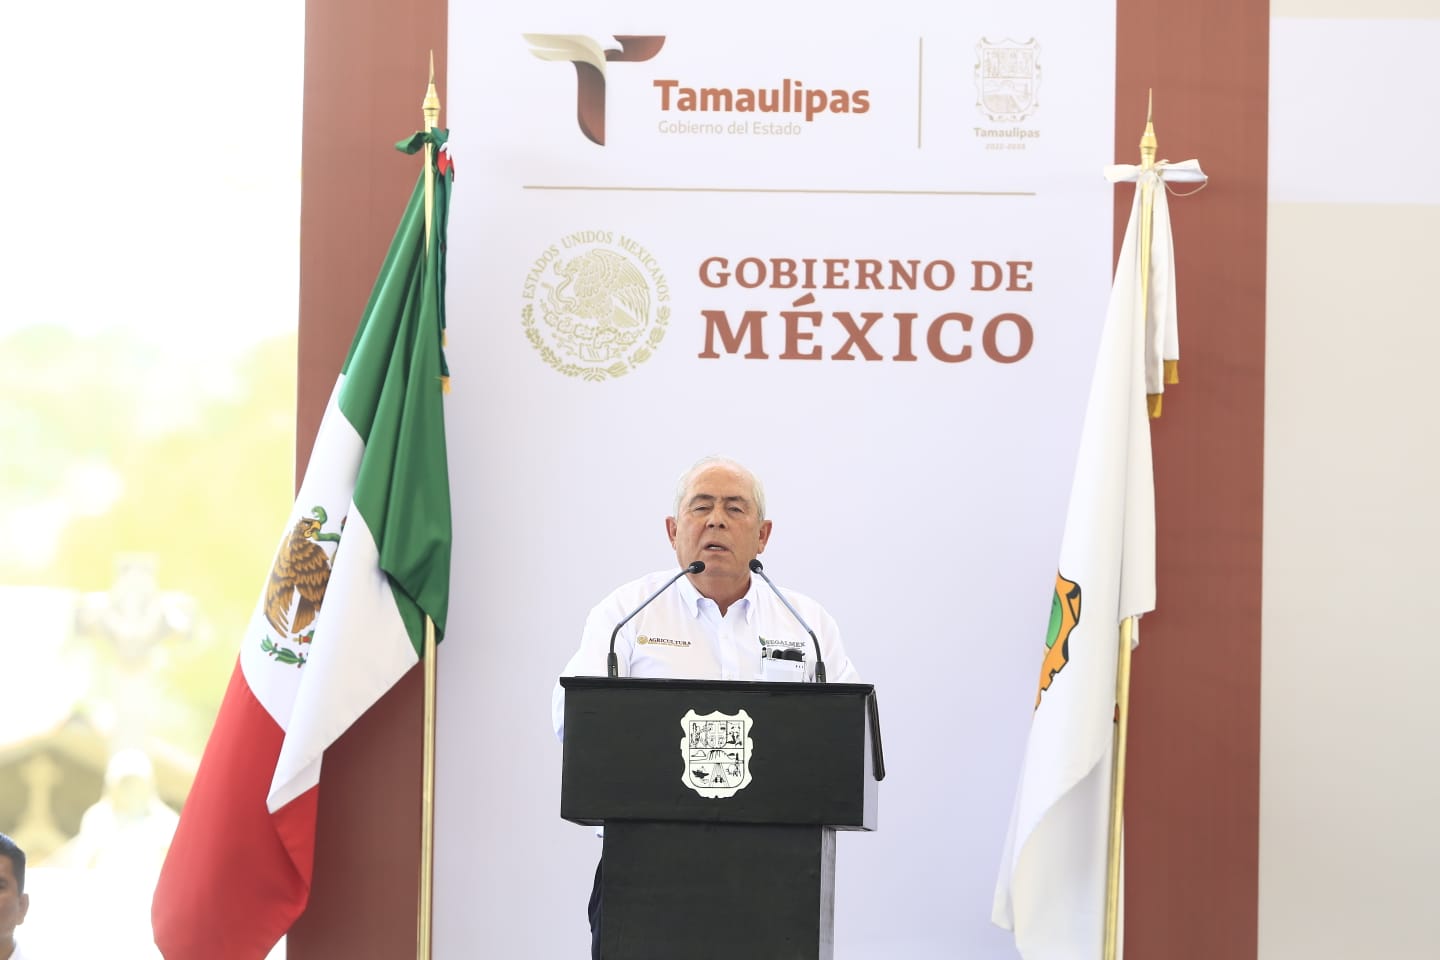 Reconoce Leonel Cota trabajo de Américo para atender la seguridad de Tamaulipas